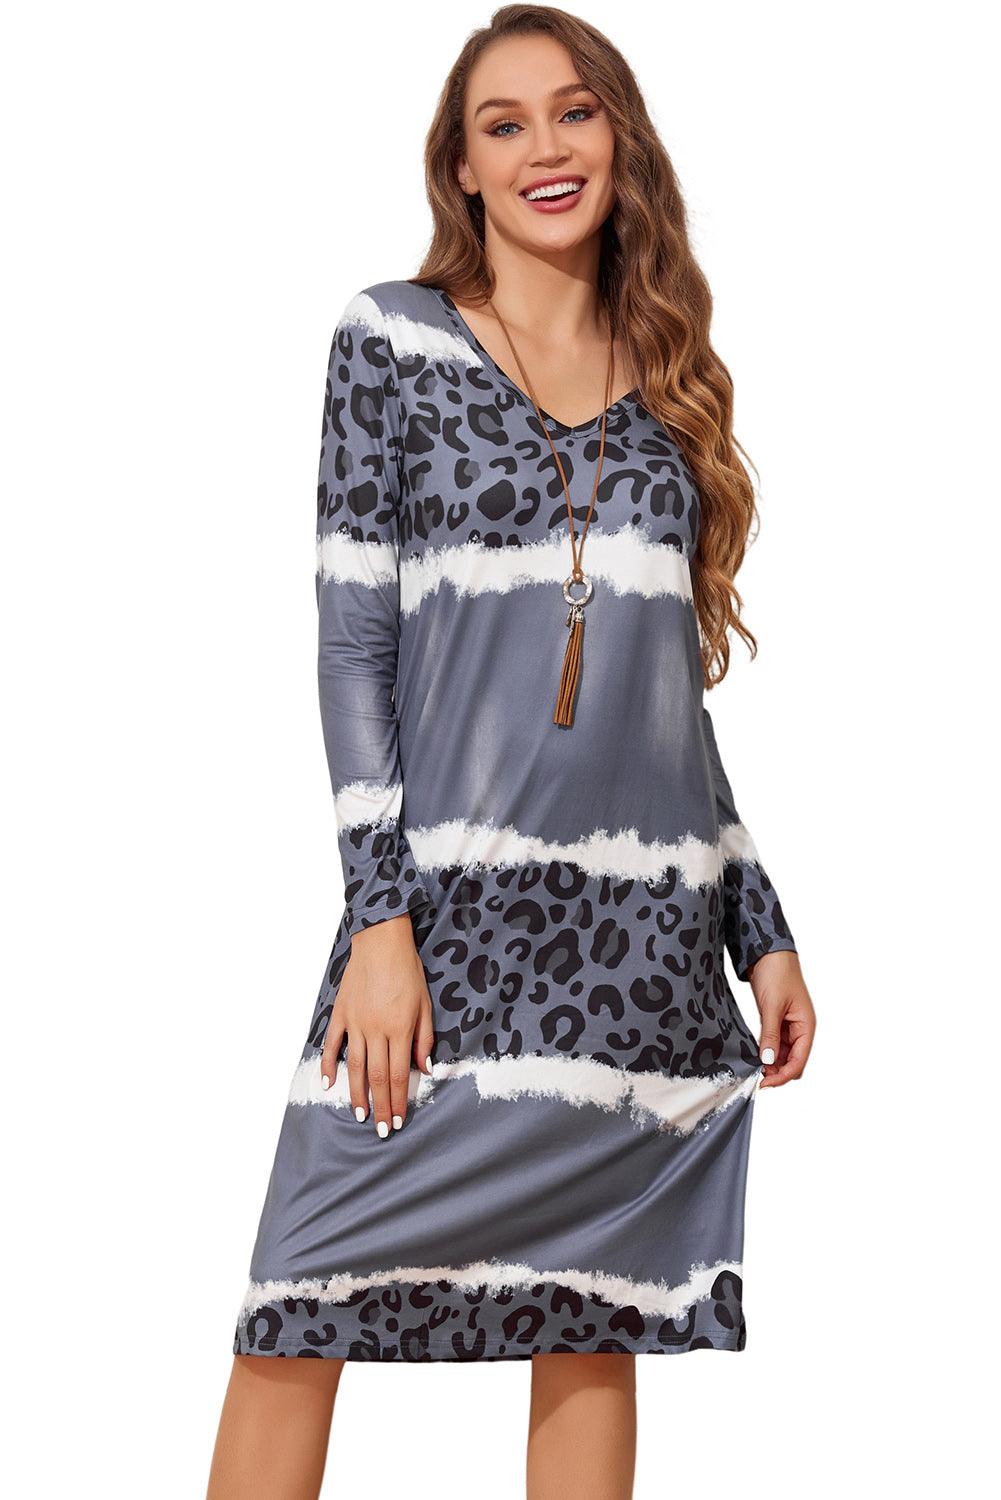 Gray Leopard Tie Dye Long Sleeve Shift Dress - L & M Kee, LLC